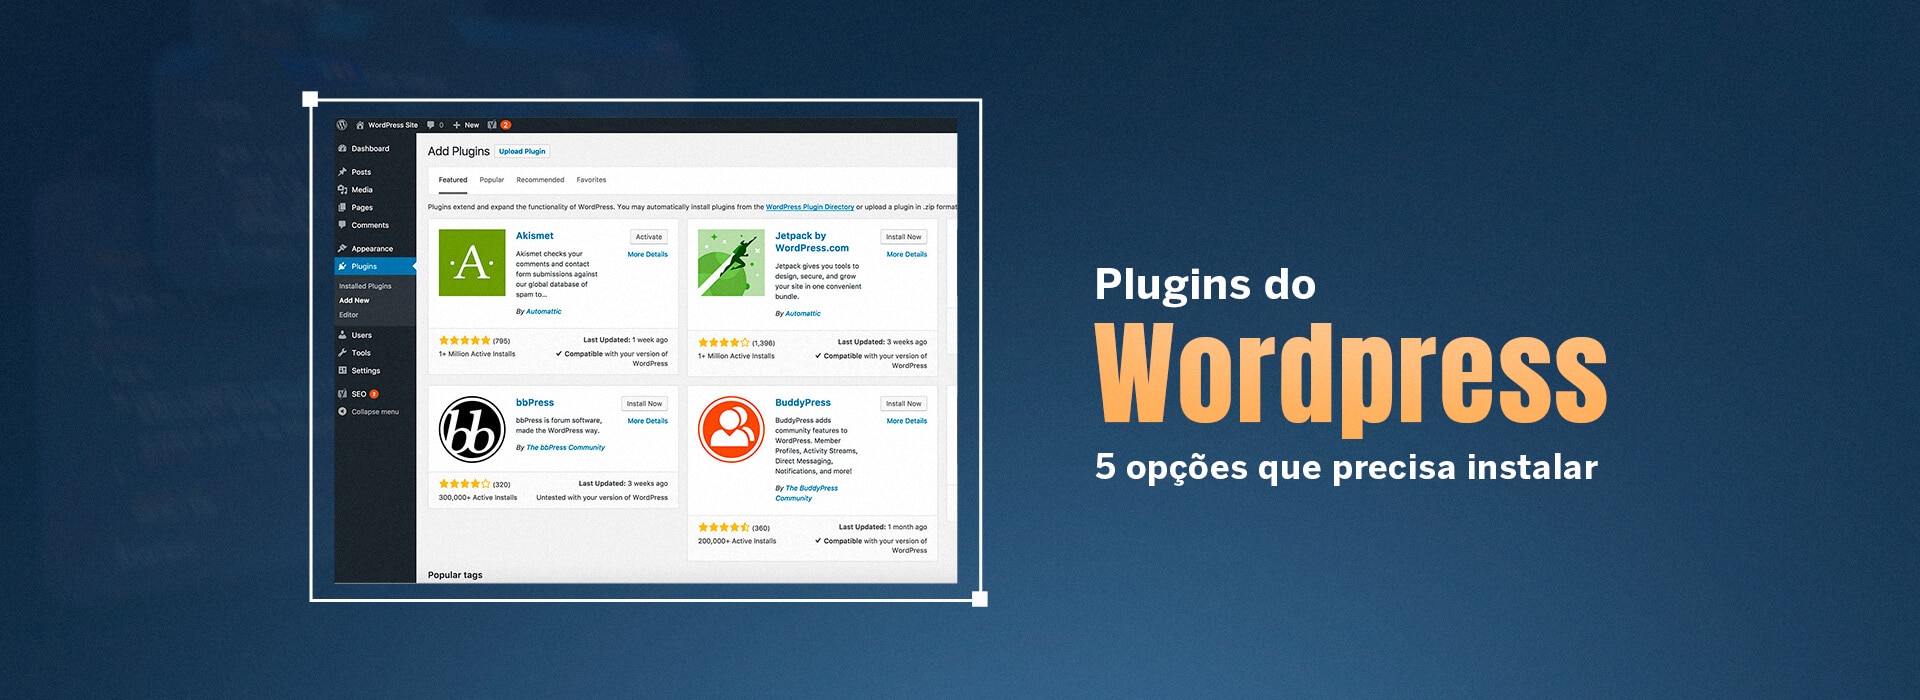 Plugins do Wordpress - 5 opções que precisa instalar